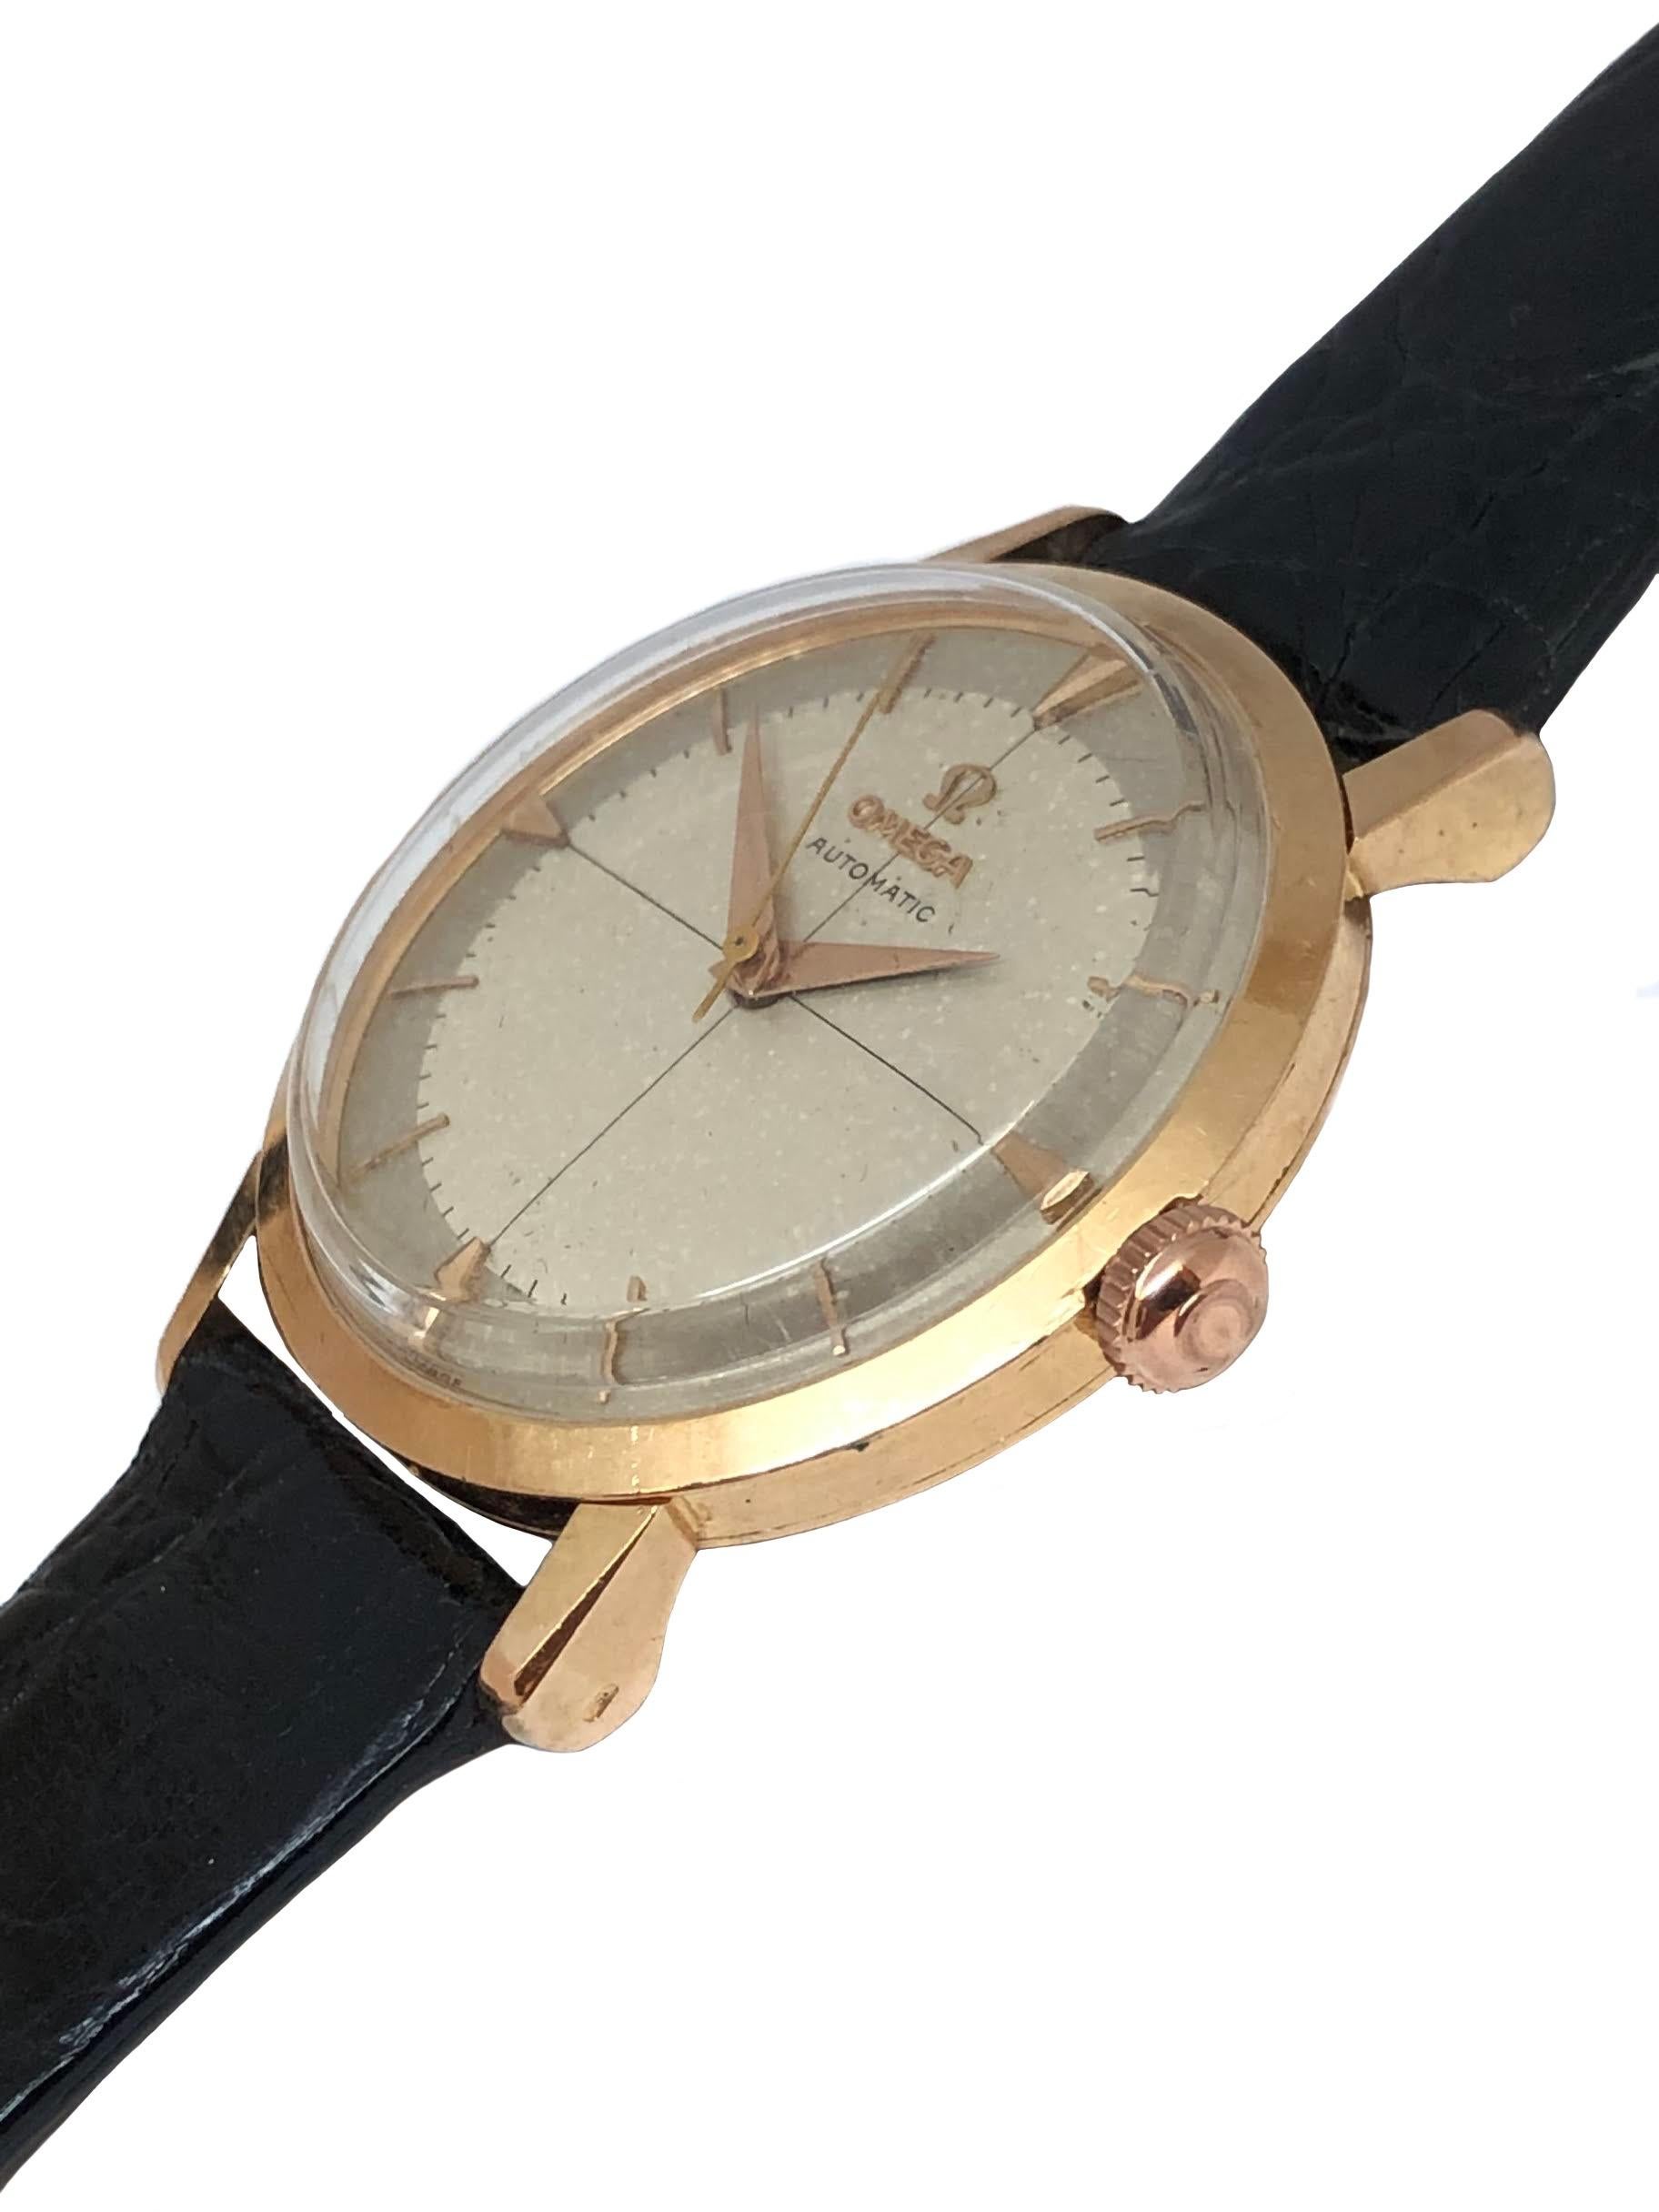 Circa 1950er Jahre Omega Armbanduhr, 34 M.M. 18K Rose Gold 3 Stück Fall mit leichten Tear Drop-Anhänger. Kaliber 501, 17-steiniges Automatik-Uhrwerk mit Selbstaufzug. Original, Excellent Silver Satin Zifferblatt mit erhabenen Rose Gold Markierungen